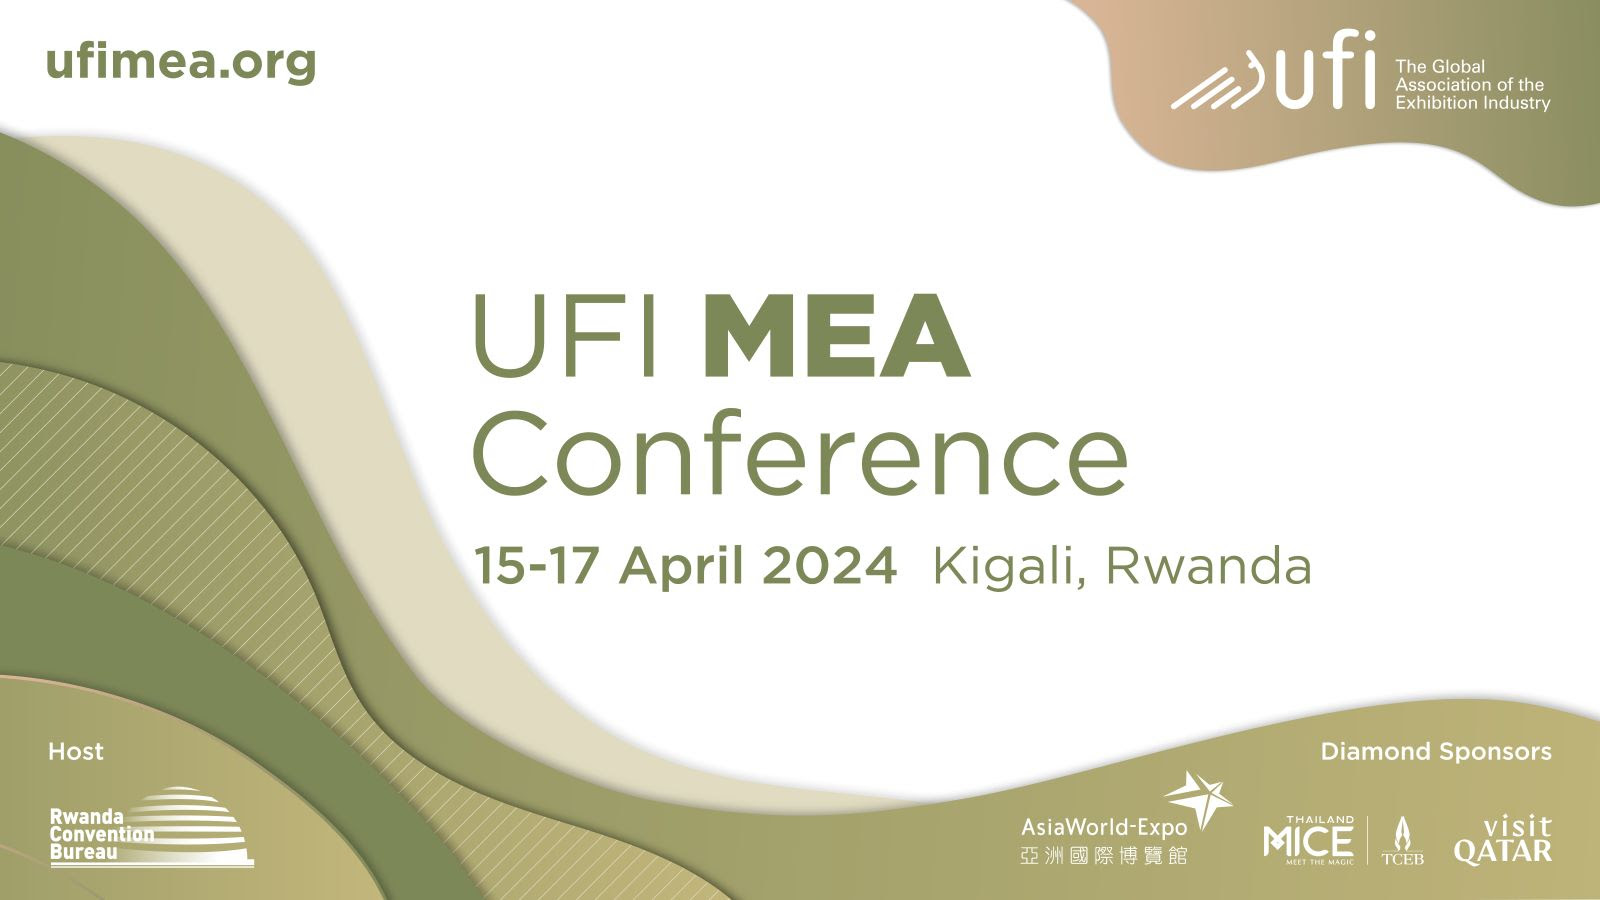 UFI MEA Conference